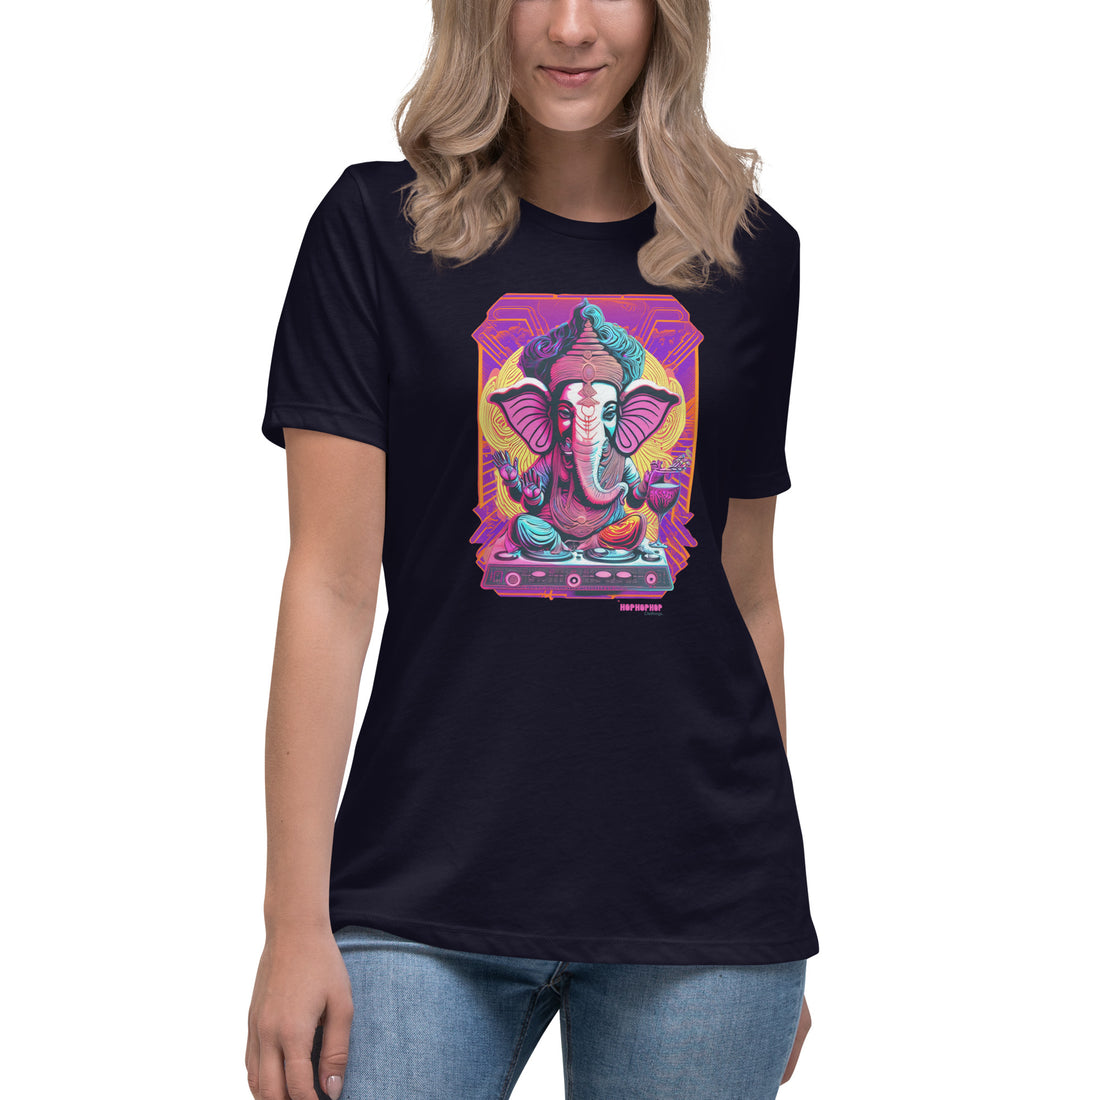 Hop Hop Hop - DVS - Ganesh Goa Vinas - T-shirt Décontracté pour Femme